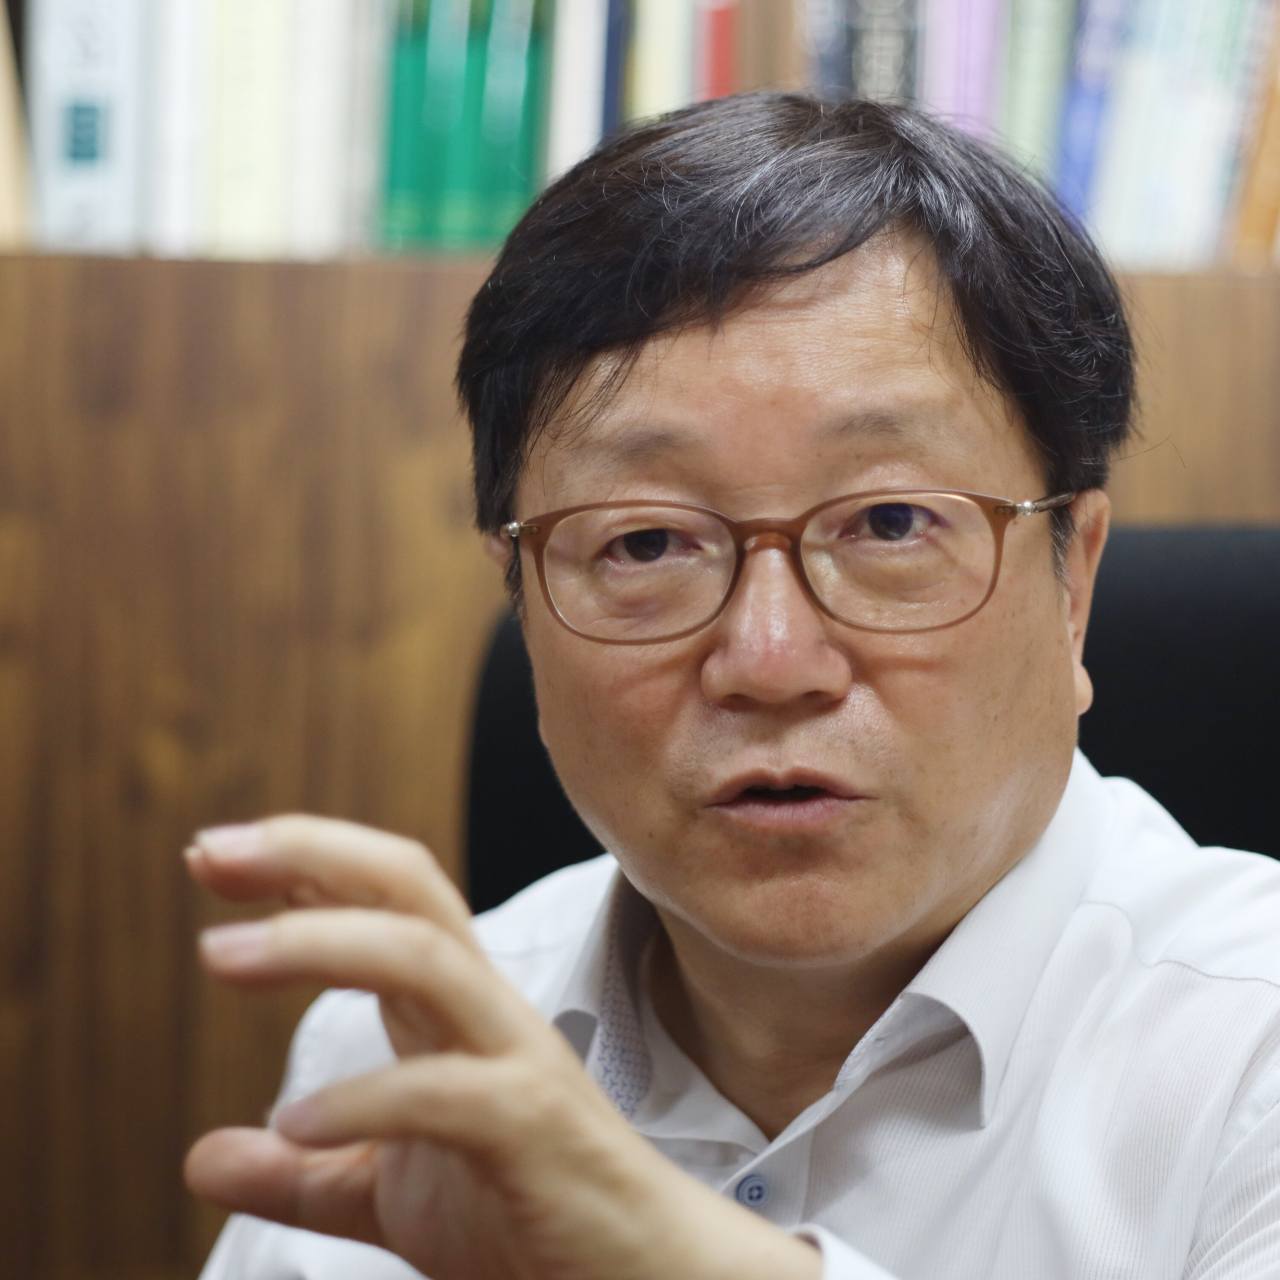 Professor Lee Chan-kyu, who researches the Korean language at Chung-Ang University. Photo © 2020 Hyungwon Kang